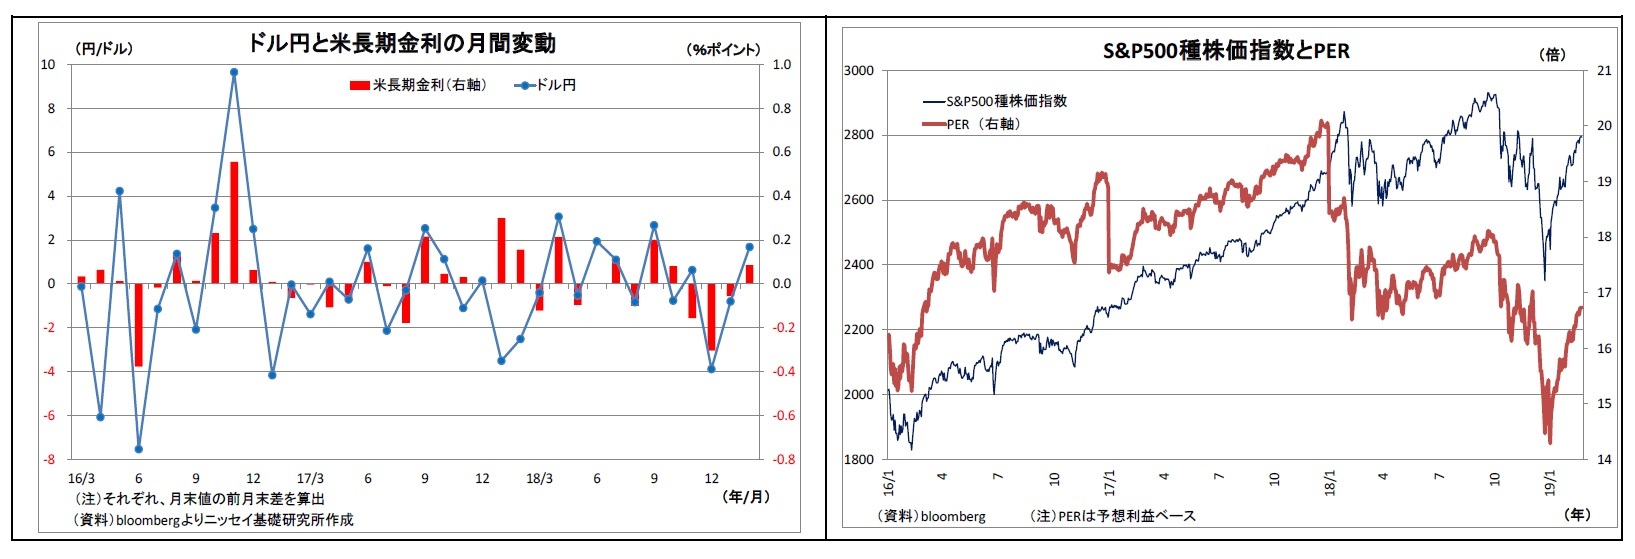 ドル円と米長期金利の月間変動/S&P500種株価指数とPER